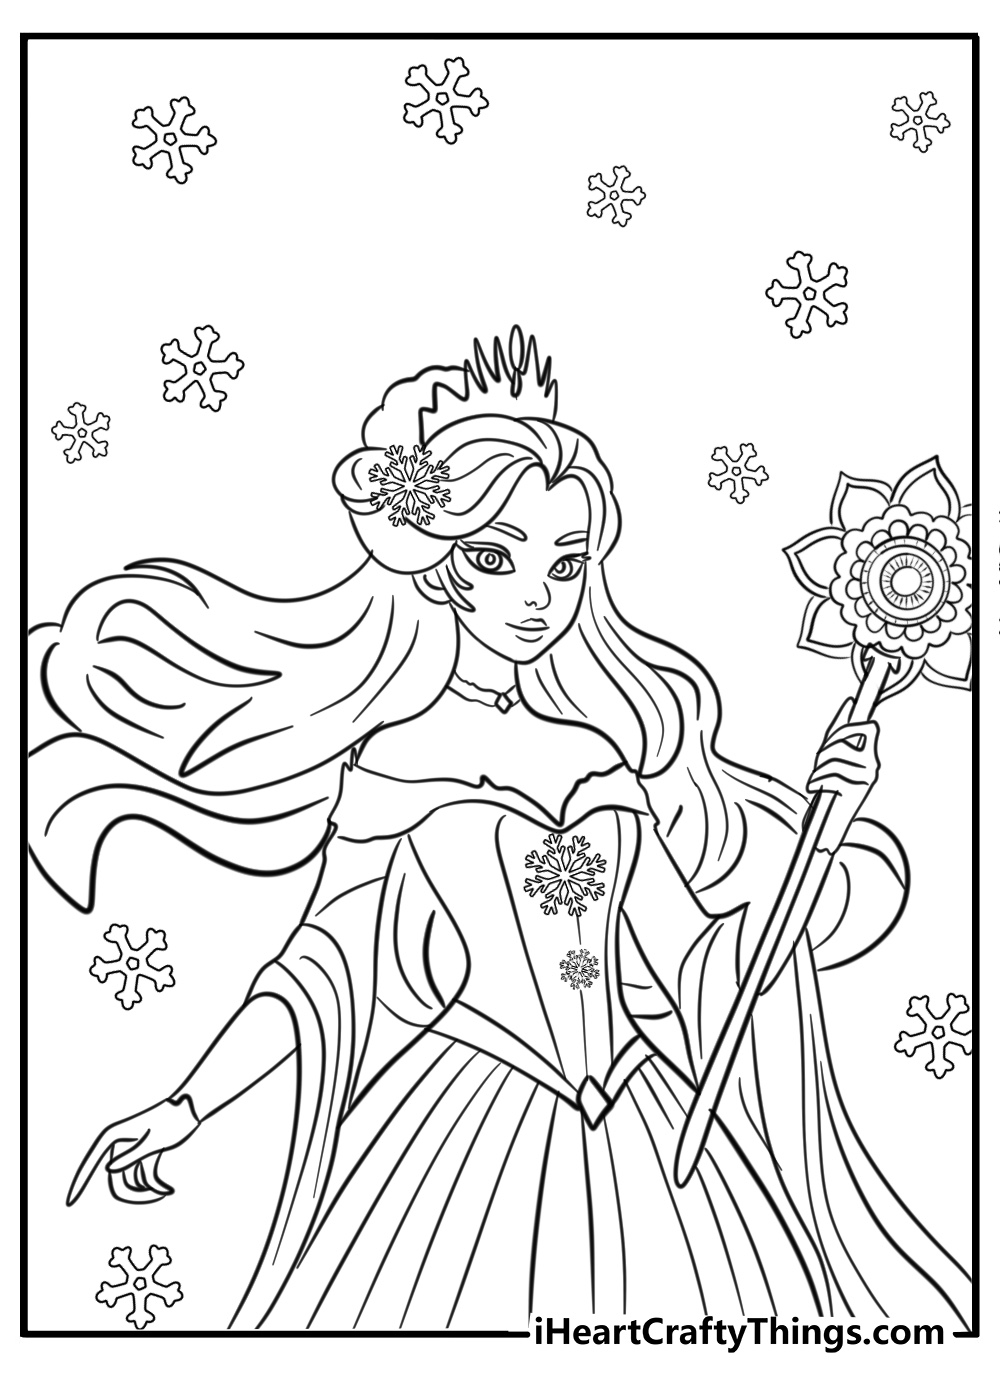 Queen elsa frozen coloring pages